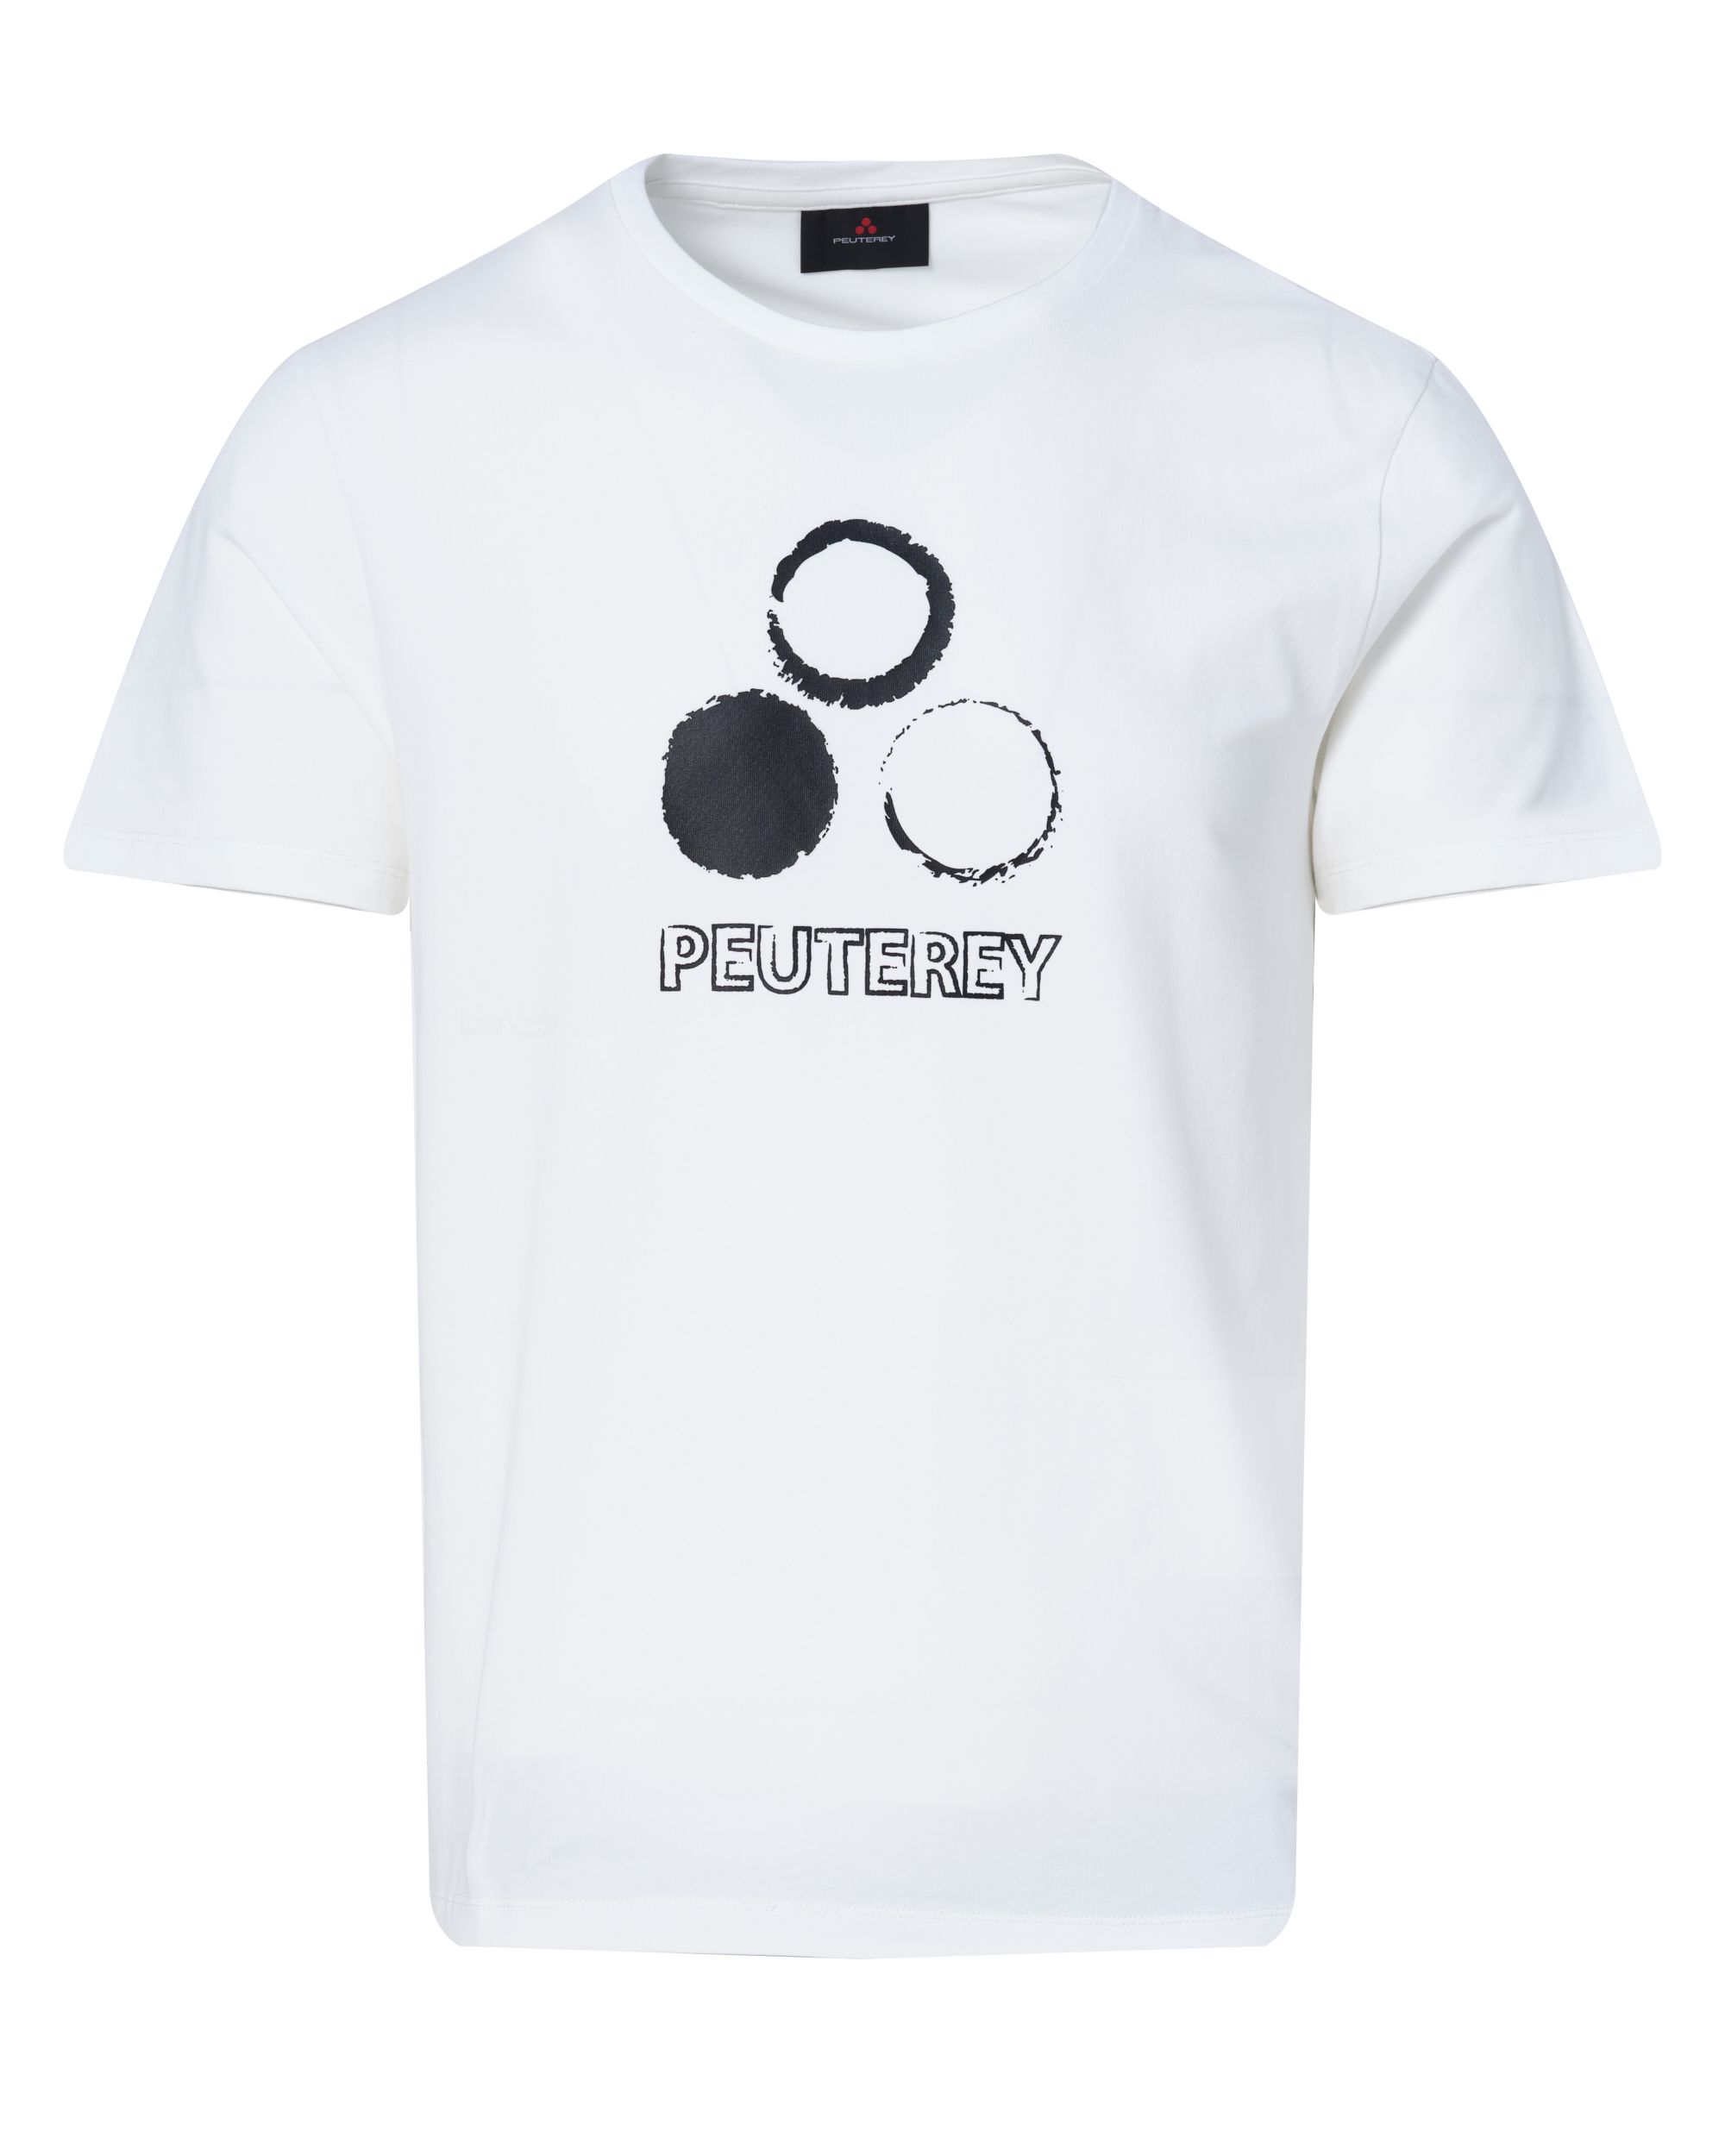 Peuterey T-shirt KM Wit 083997-001-L